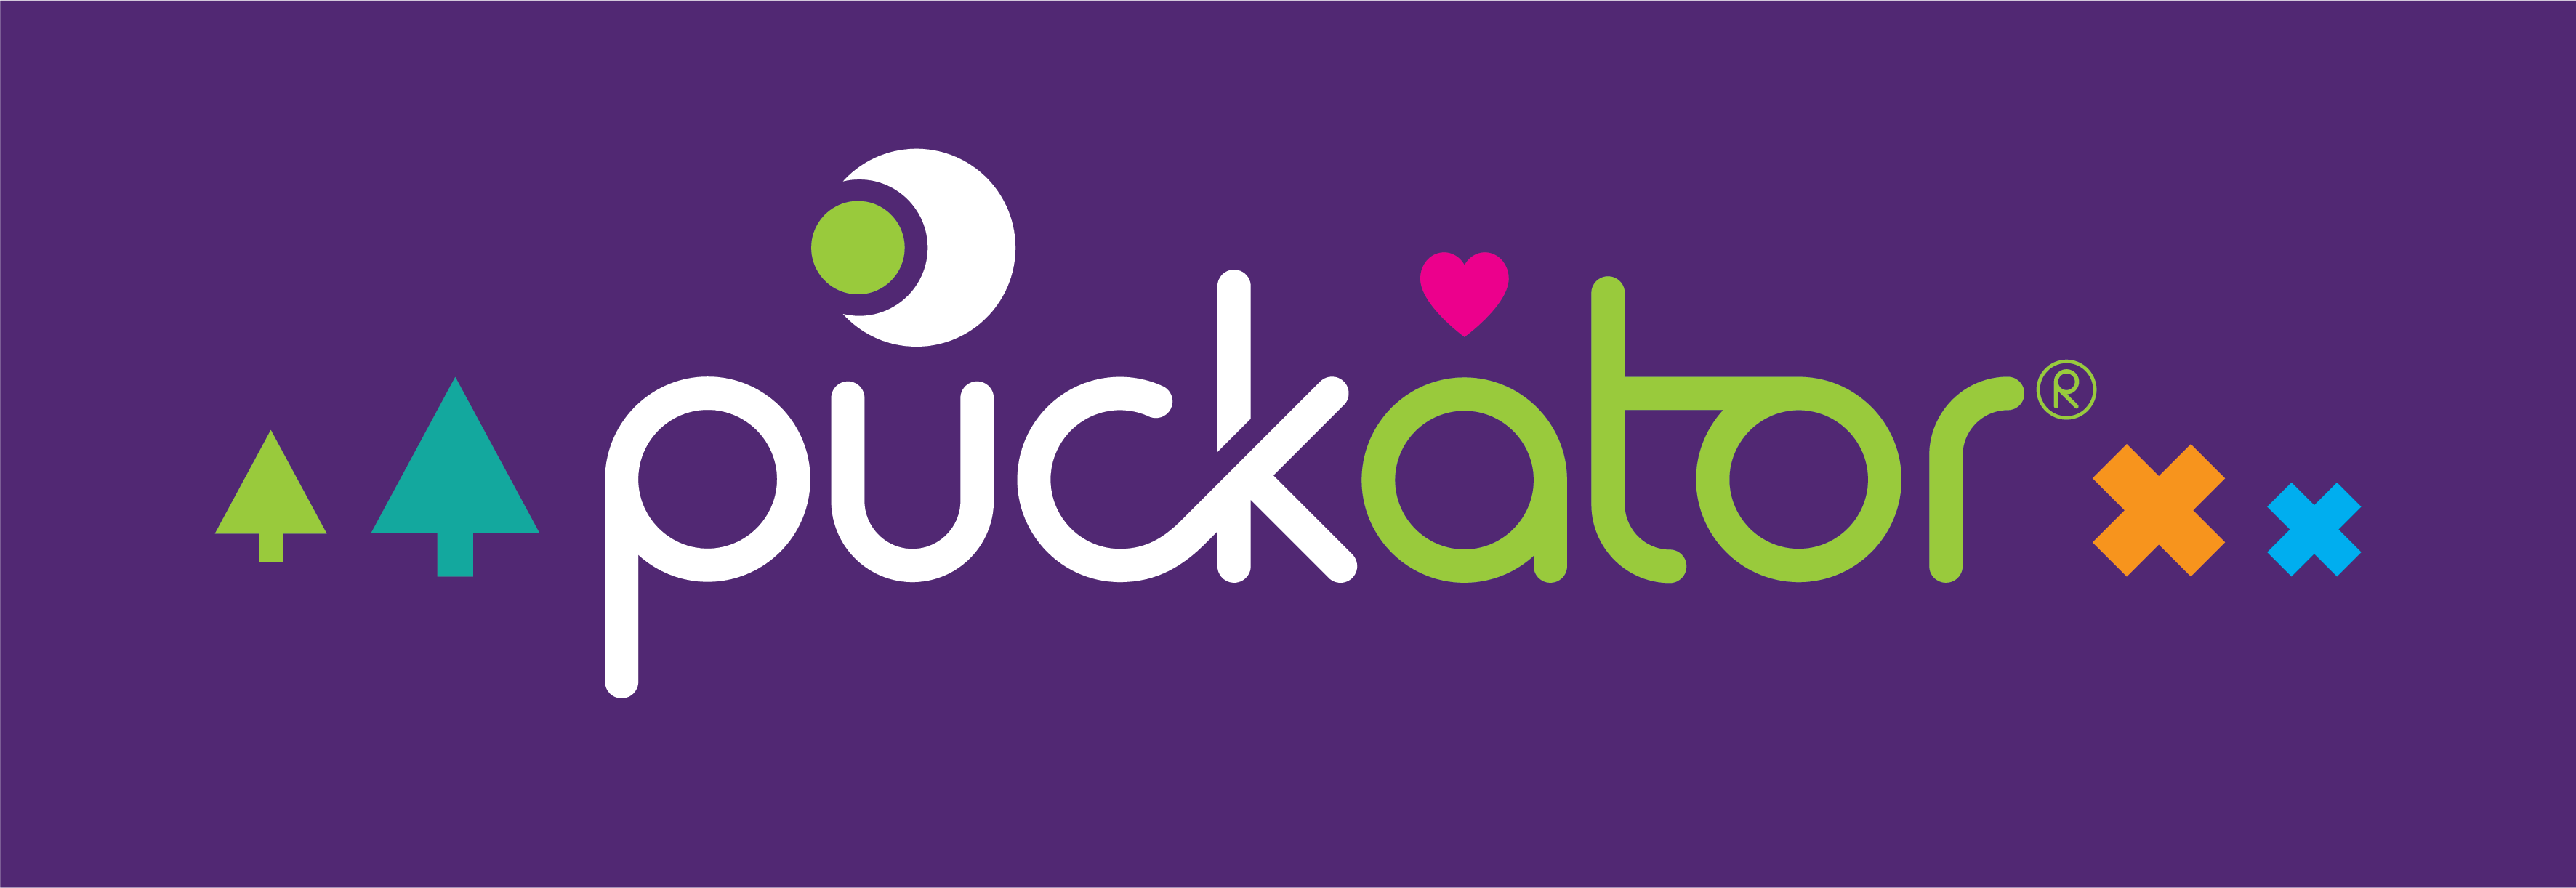 Puckator- ¡estamos para ayudarte!